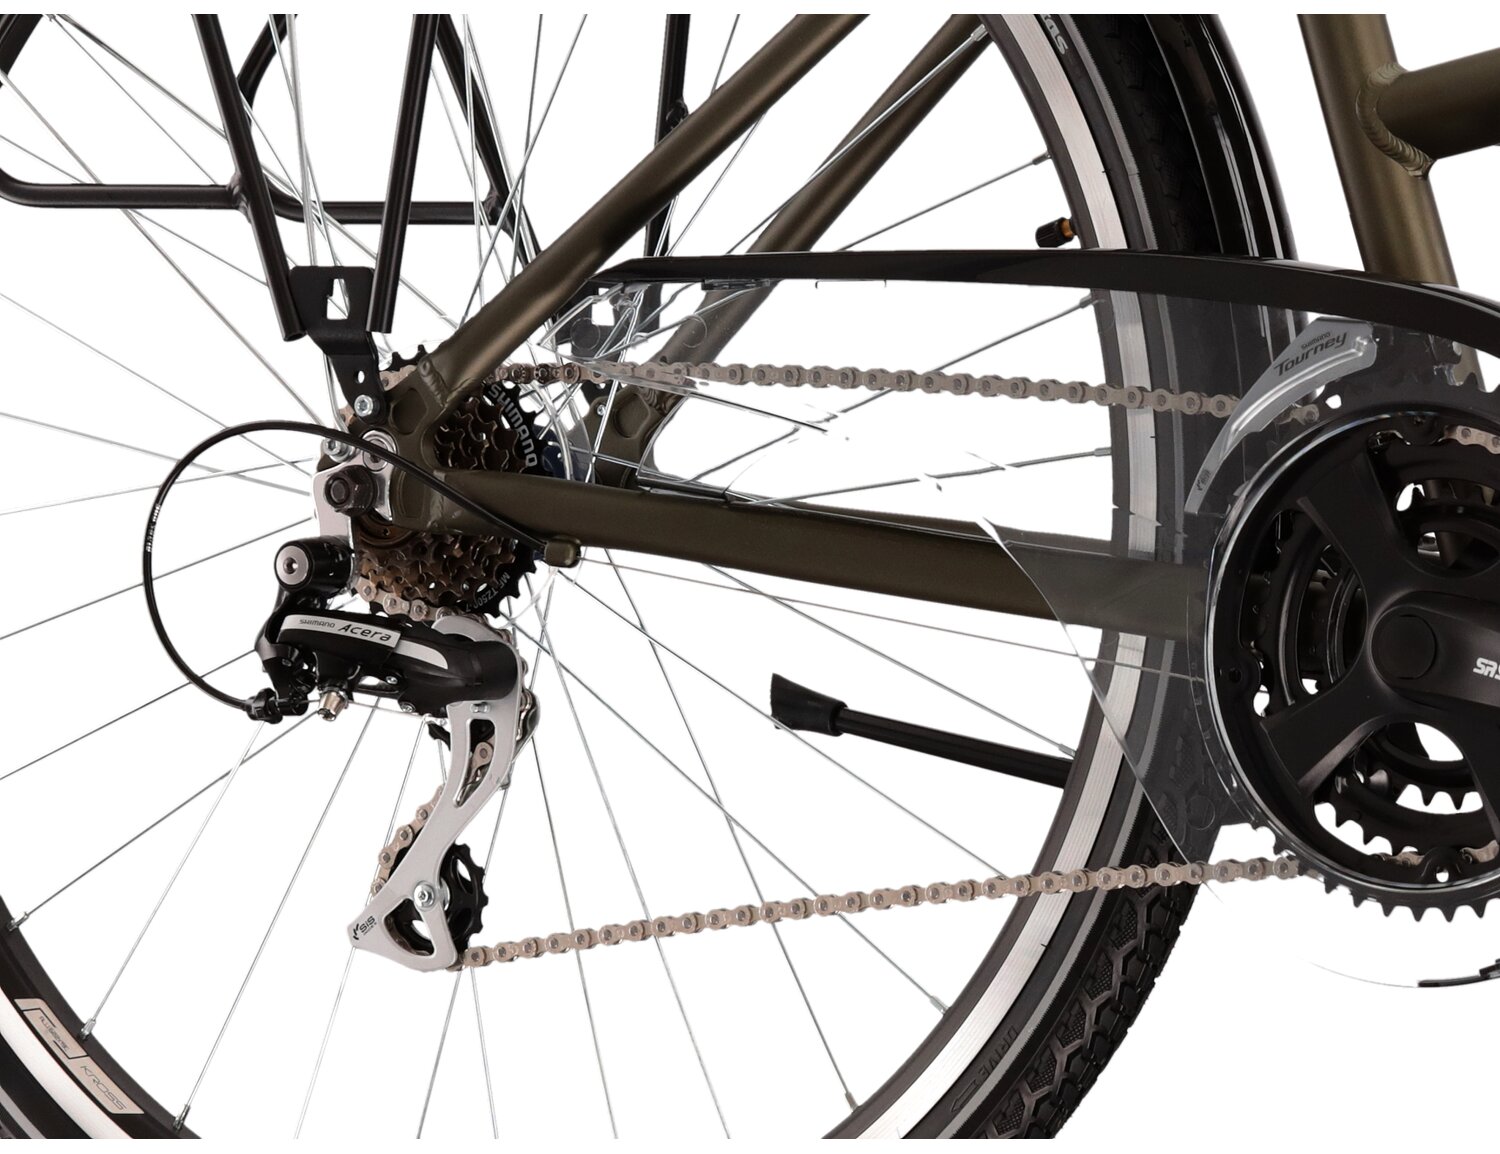  Tylna siedmiobiegowa przerzutka Shimano Acera M3020 oraz hamulce v-brake w rowerze trekkingowym damskim KROSS Trans 3.0 